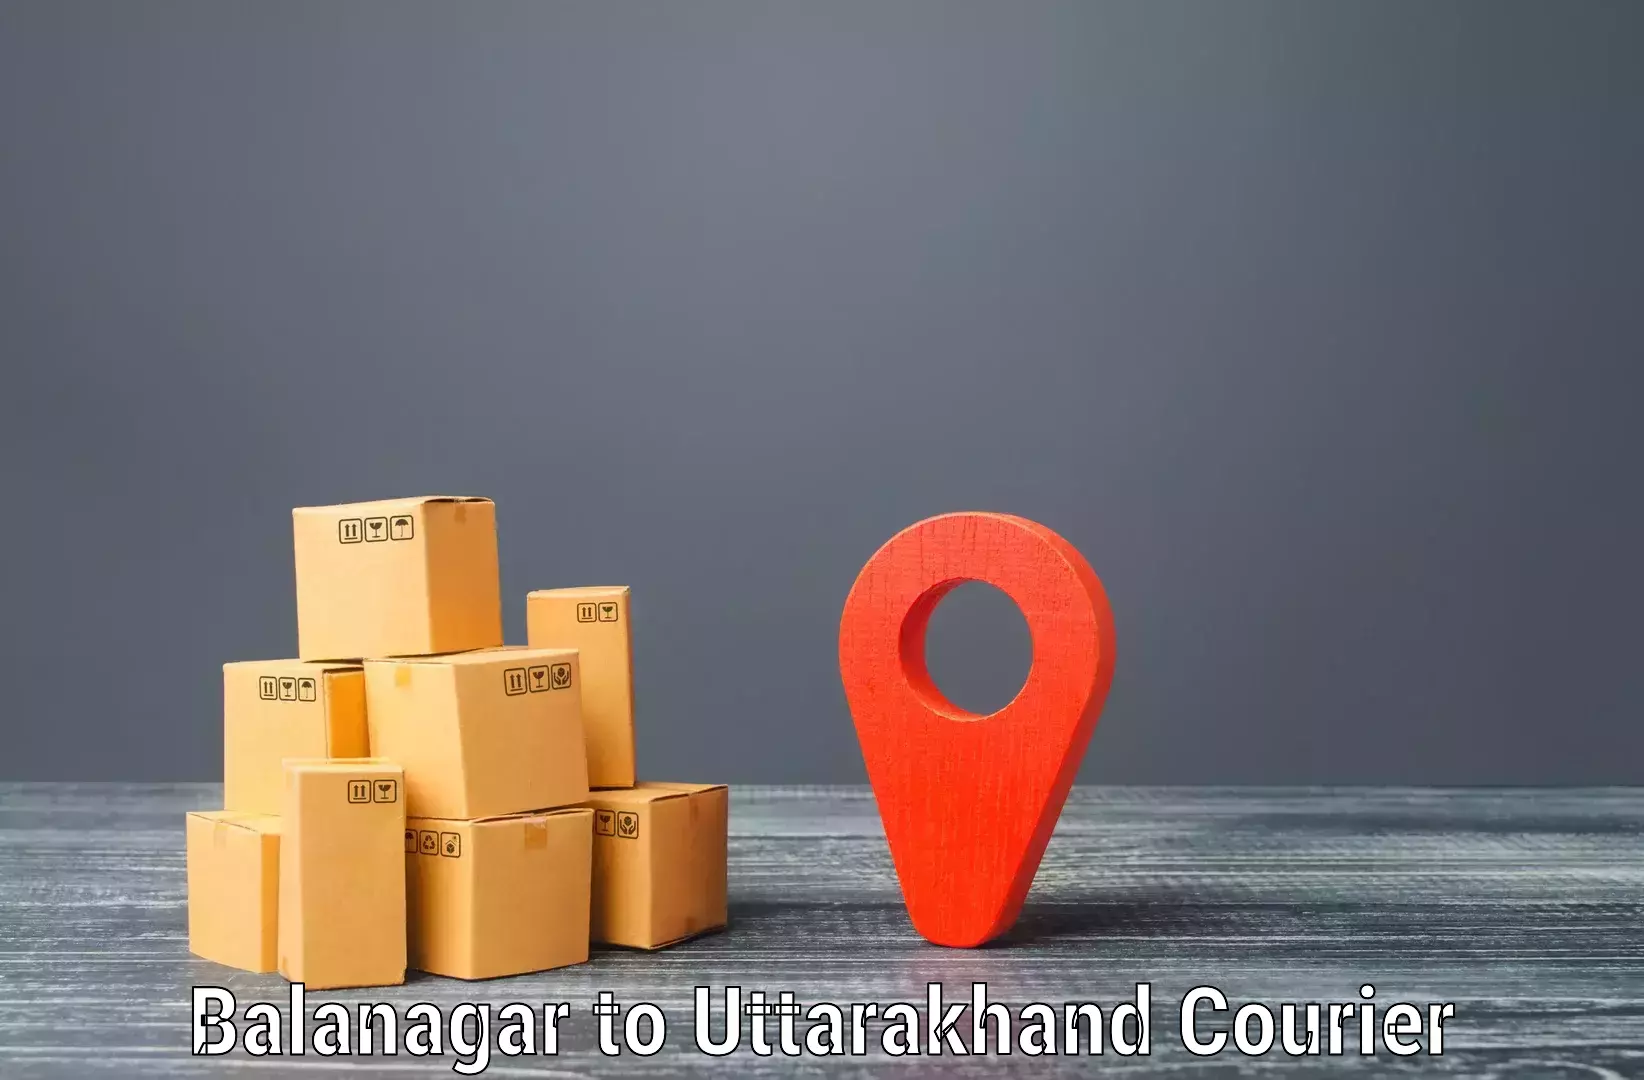 Advanced shipping services Balanagar to Haldwani